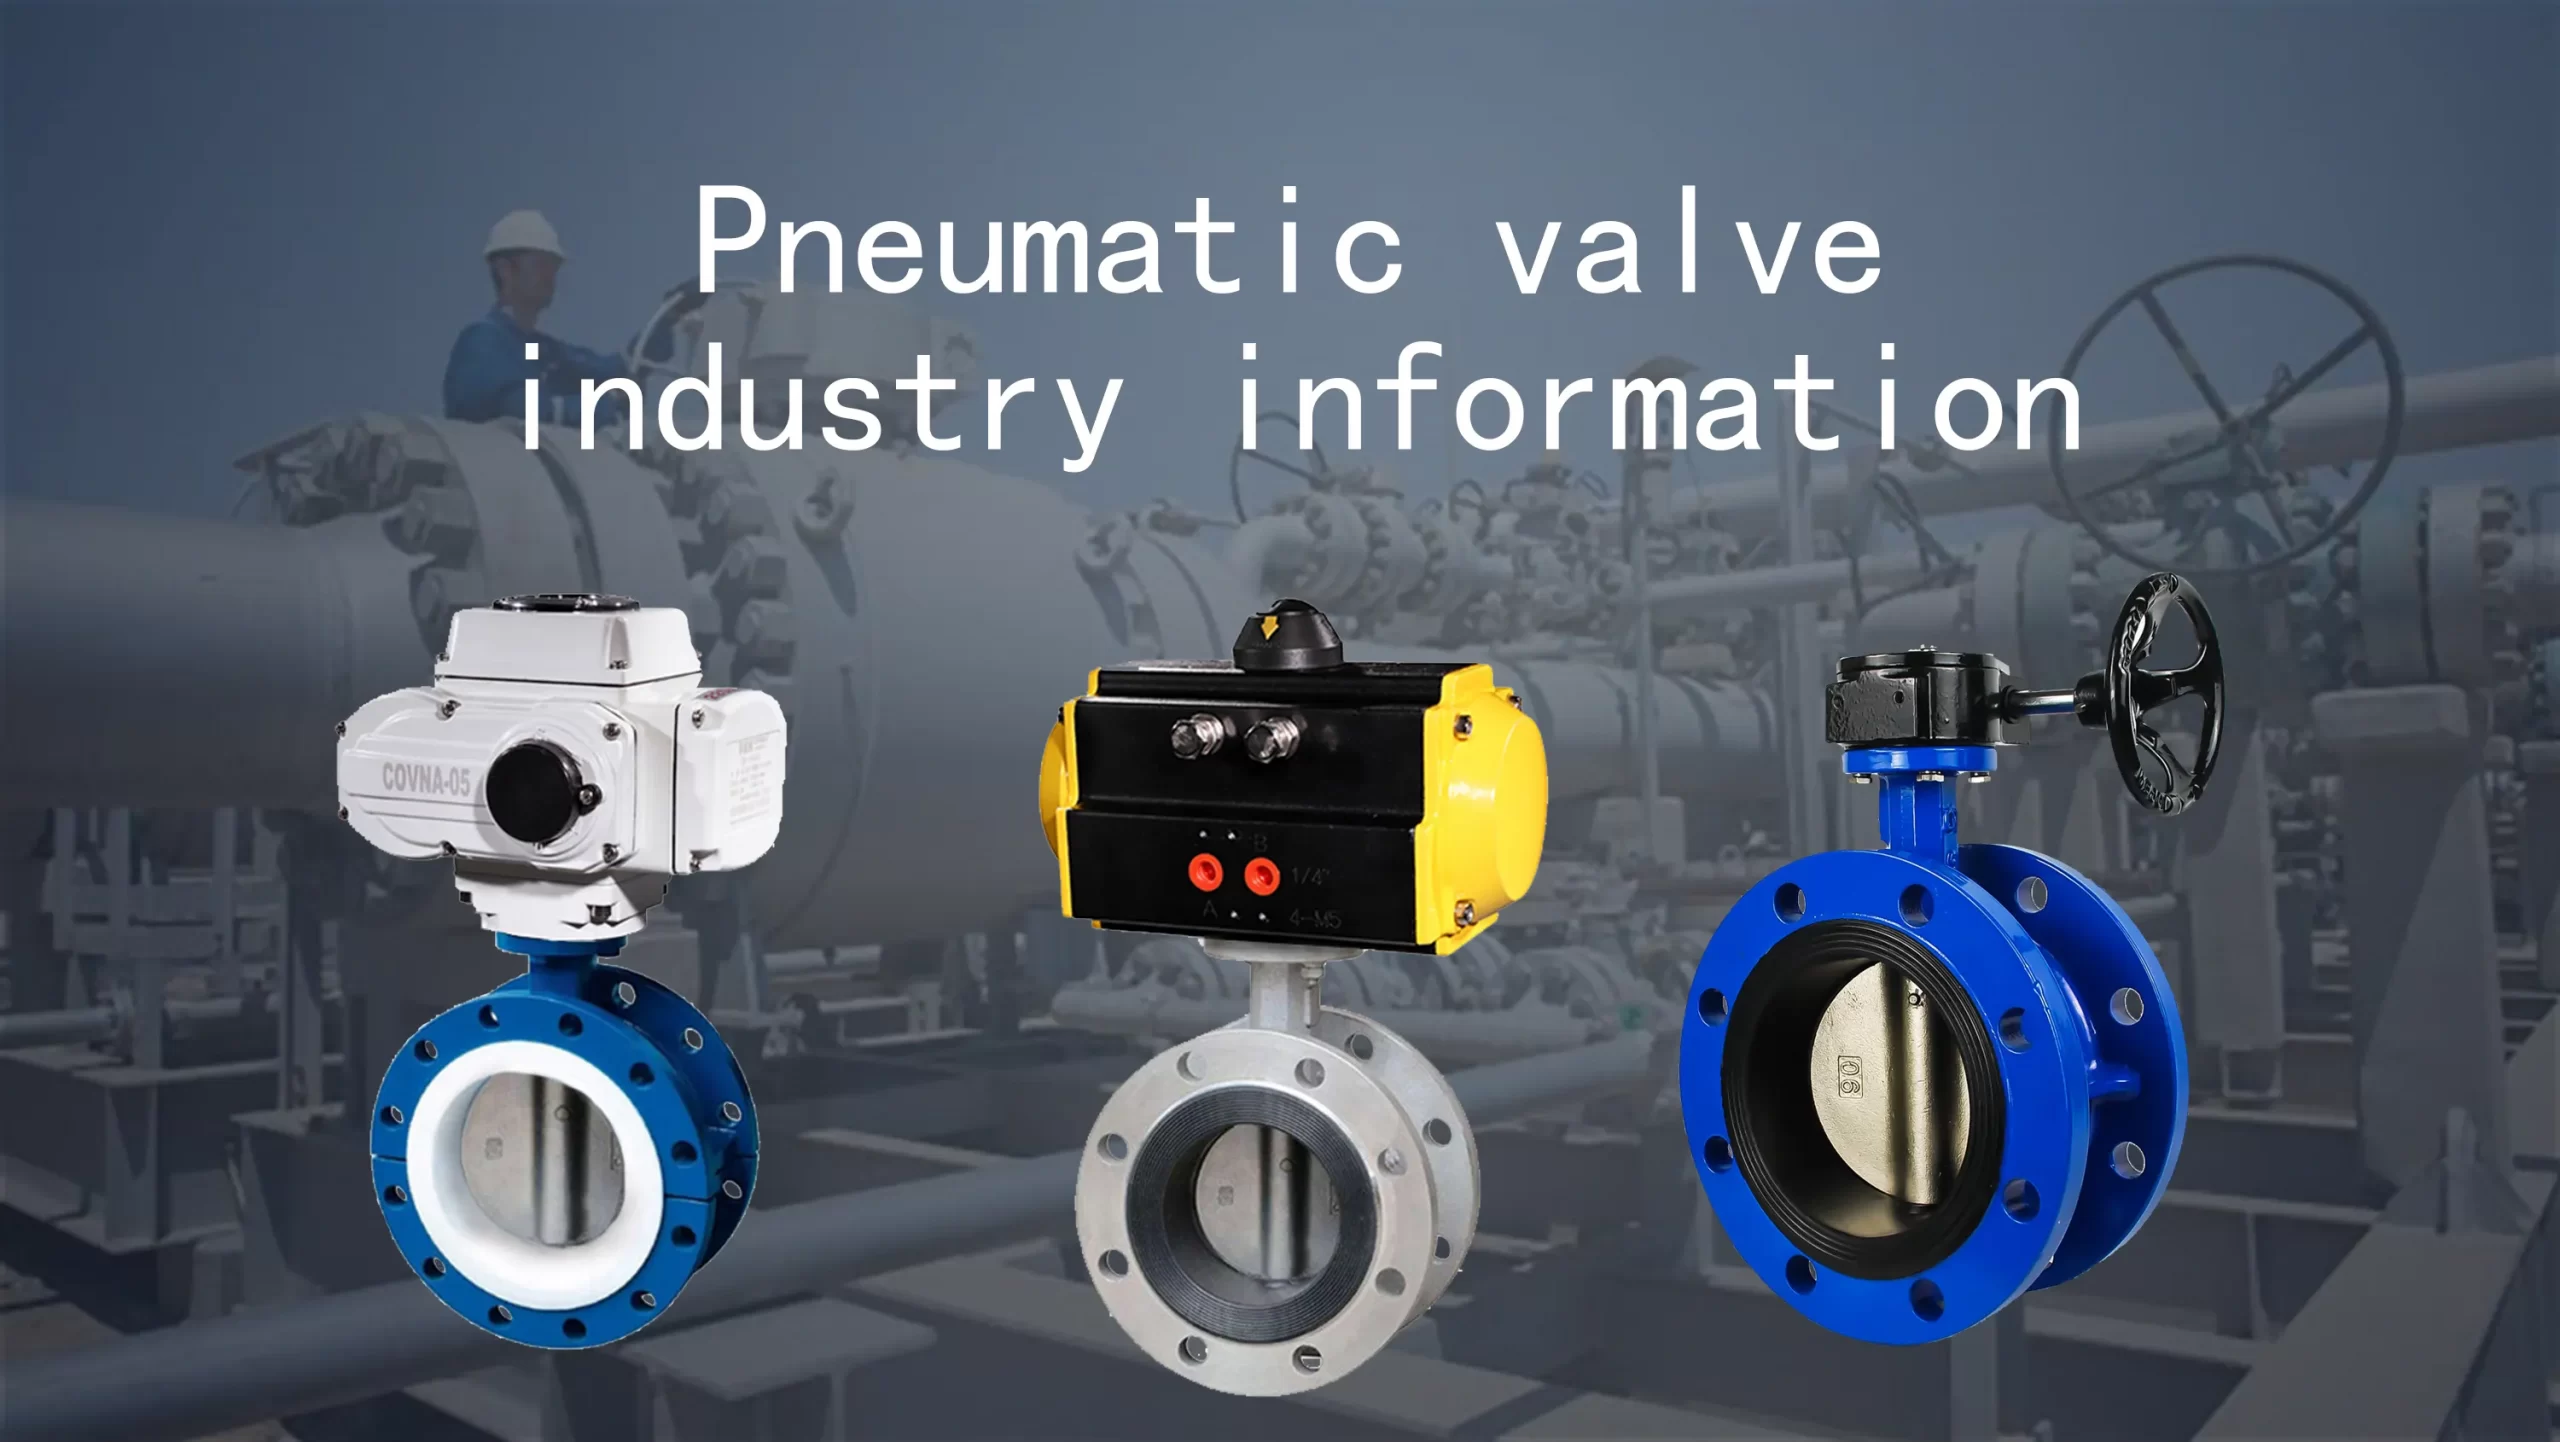 Pneumatic valve industry information